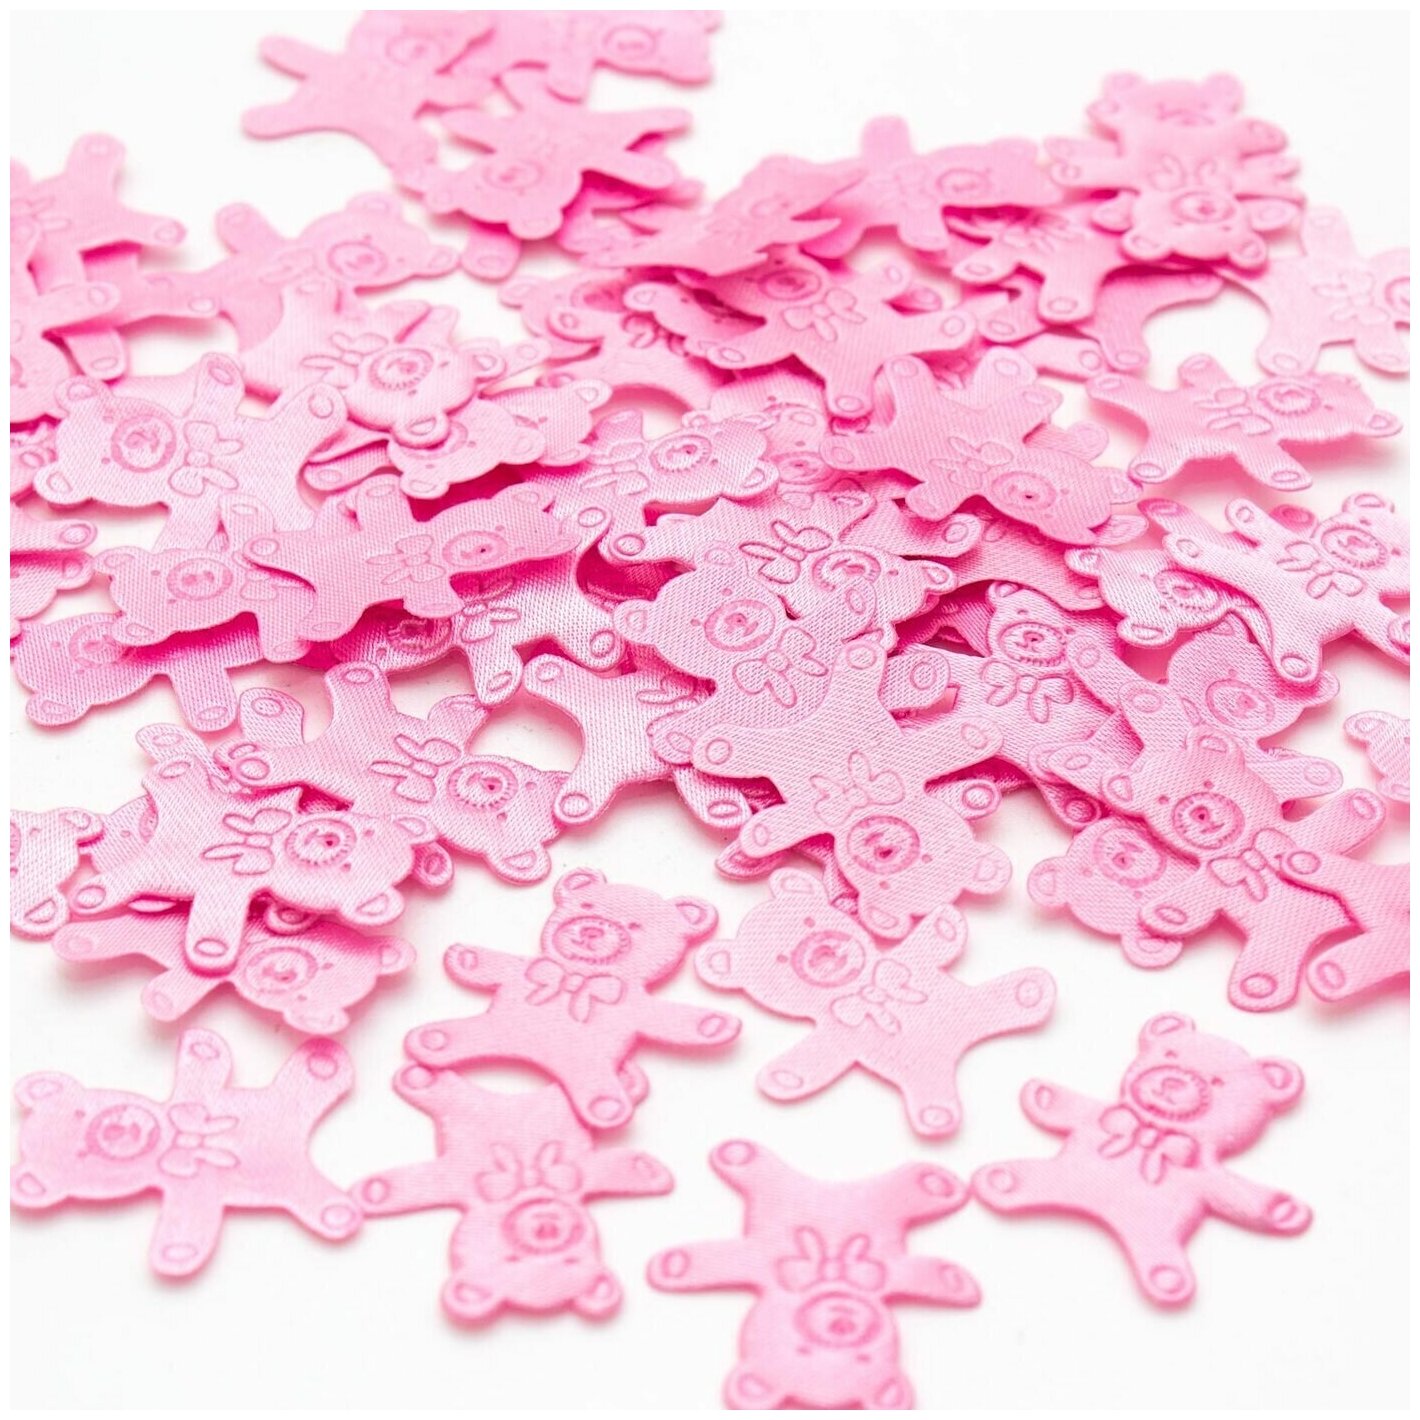 Оригинальное конфетти атласное "Медвежонок розовый" для детского дня рождения, украшения стола, наполнения подарков и творческих поделок, 5 упаковок